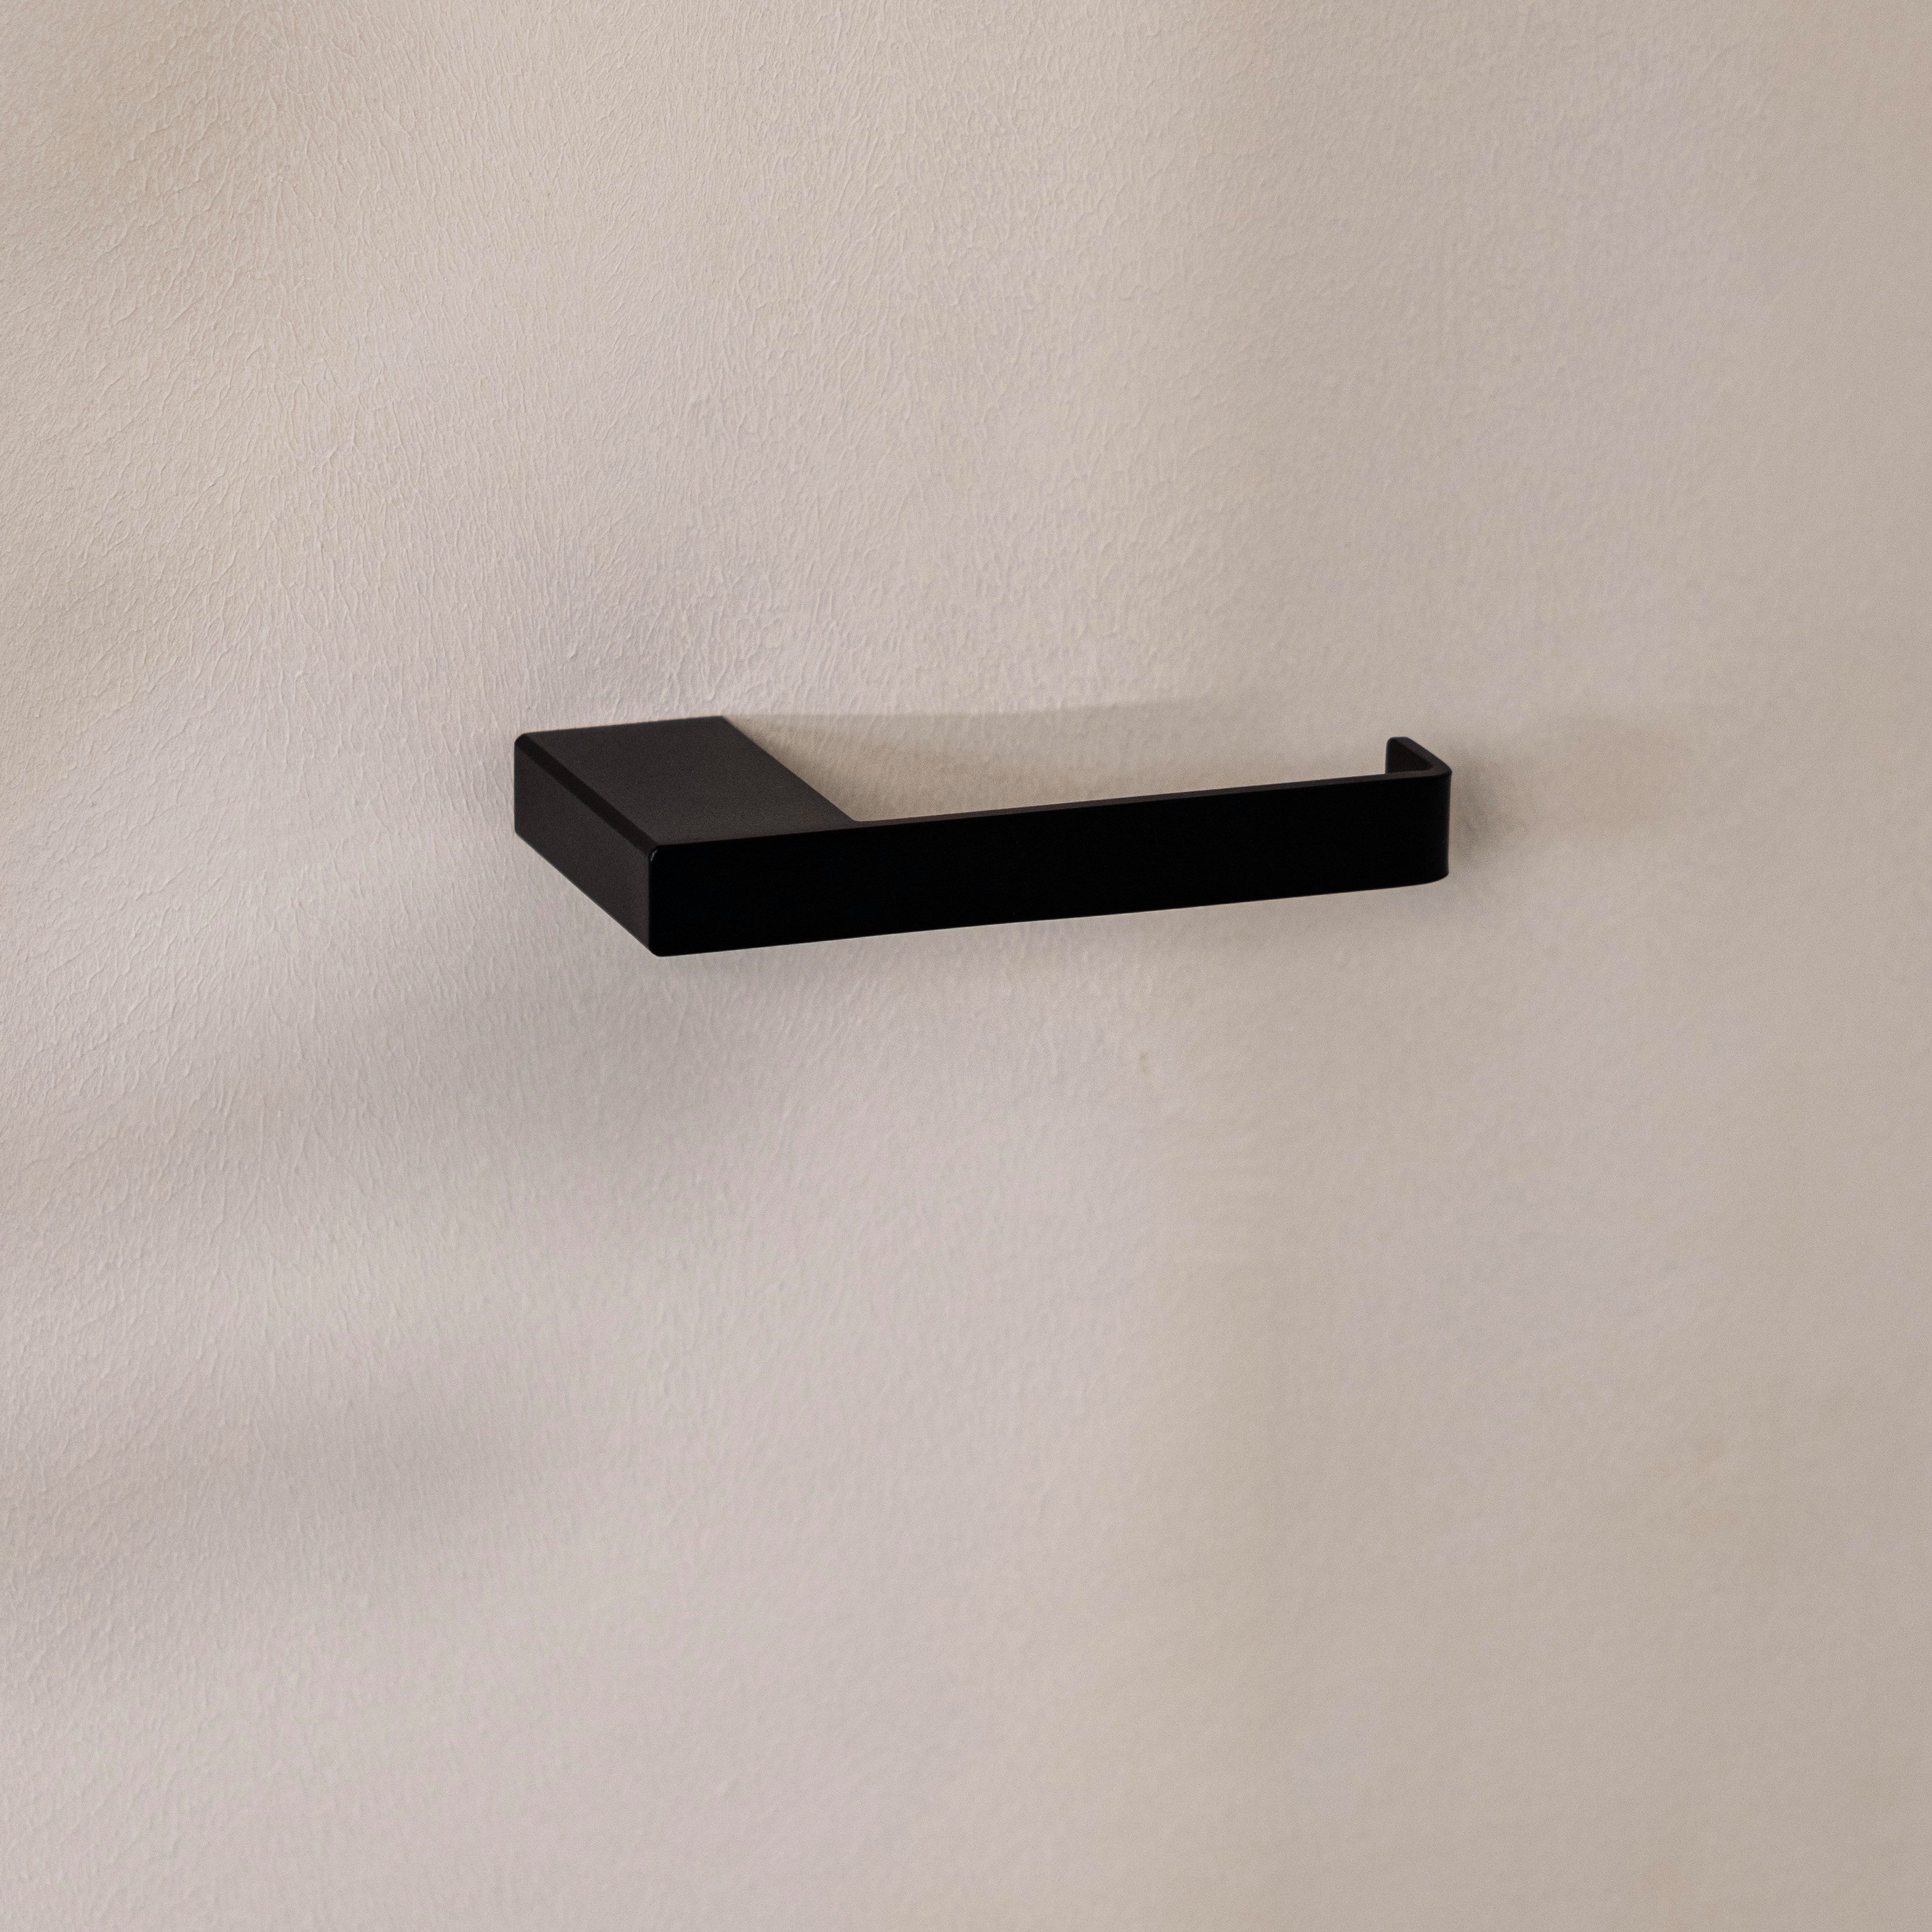 Metallbude Toilettenpapierhalter TUALI, einfache Montage, ohne sichtbare Verschraubungen